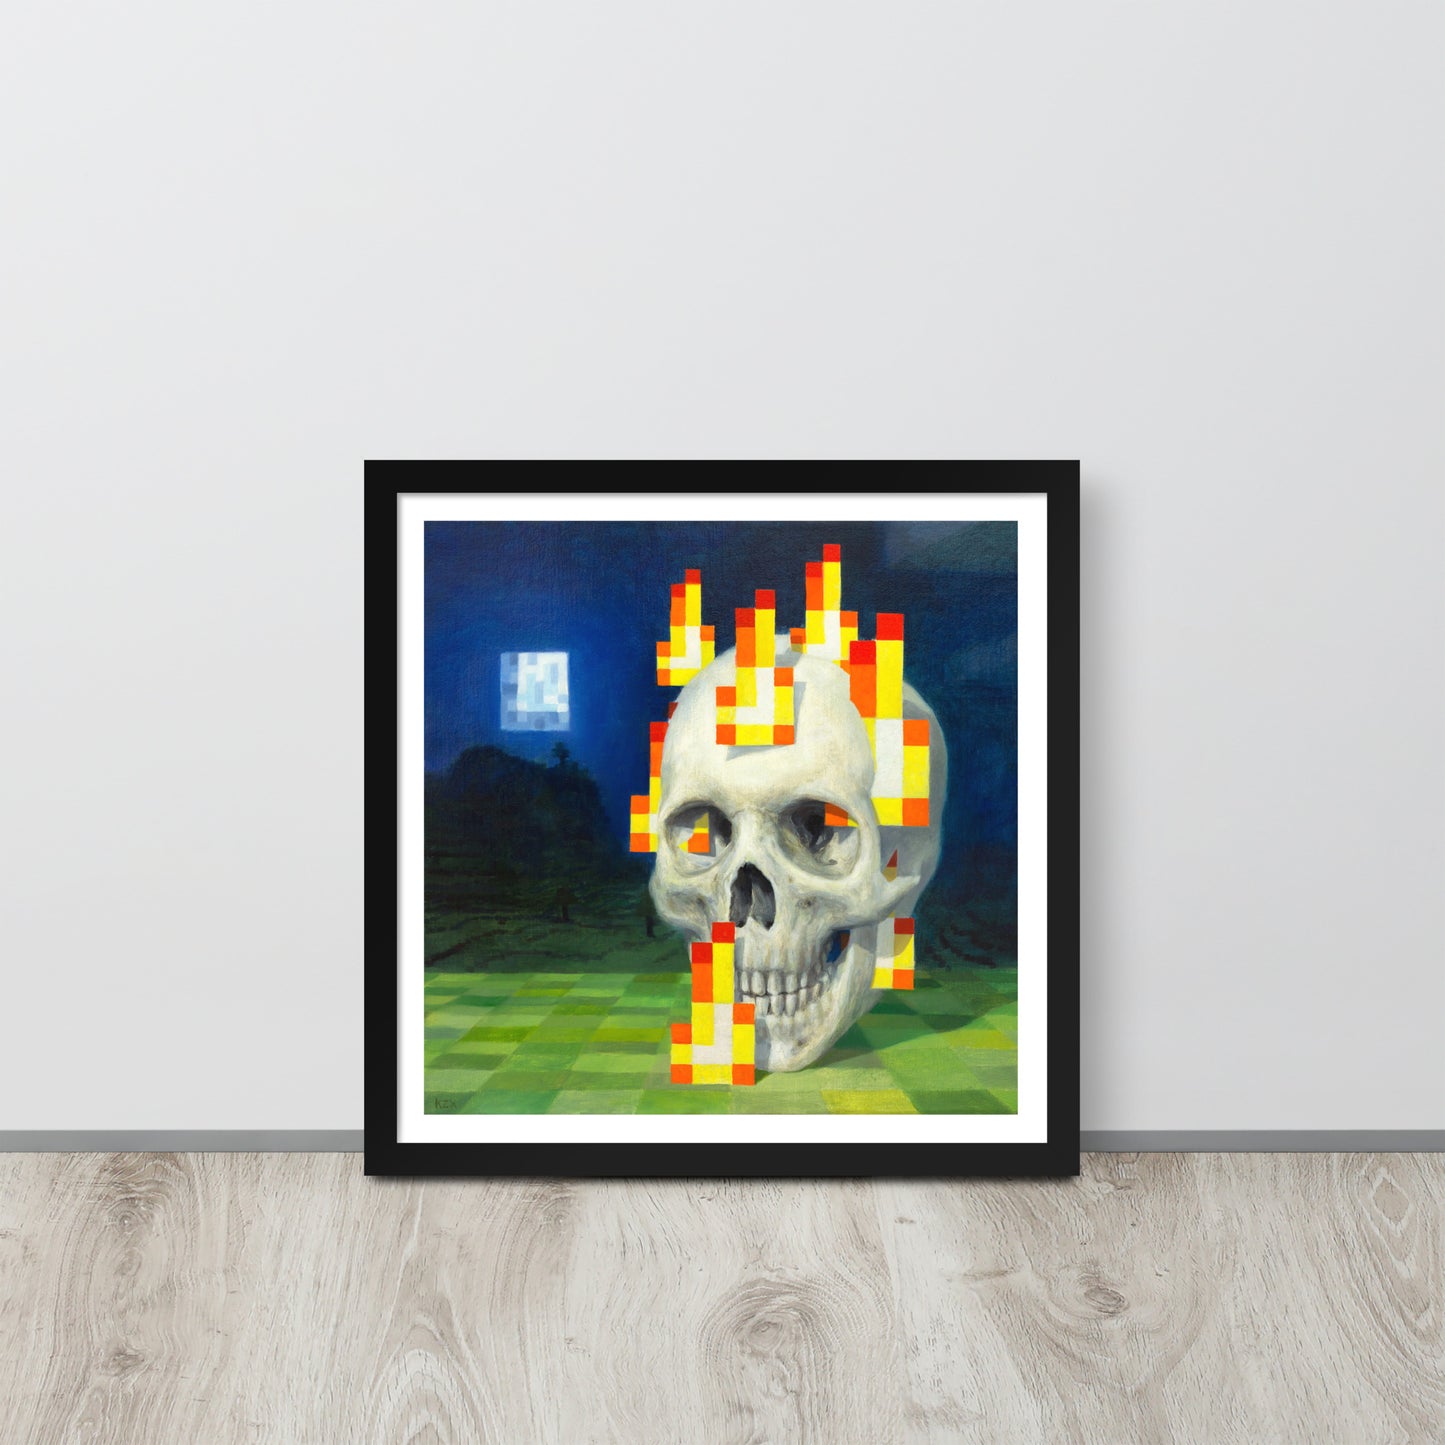 Skull on fire / Burning skull - Framed poster